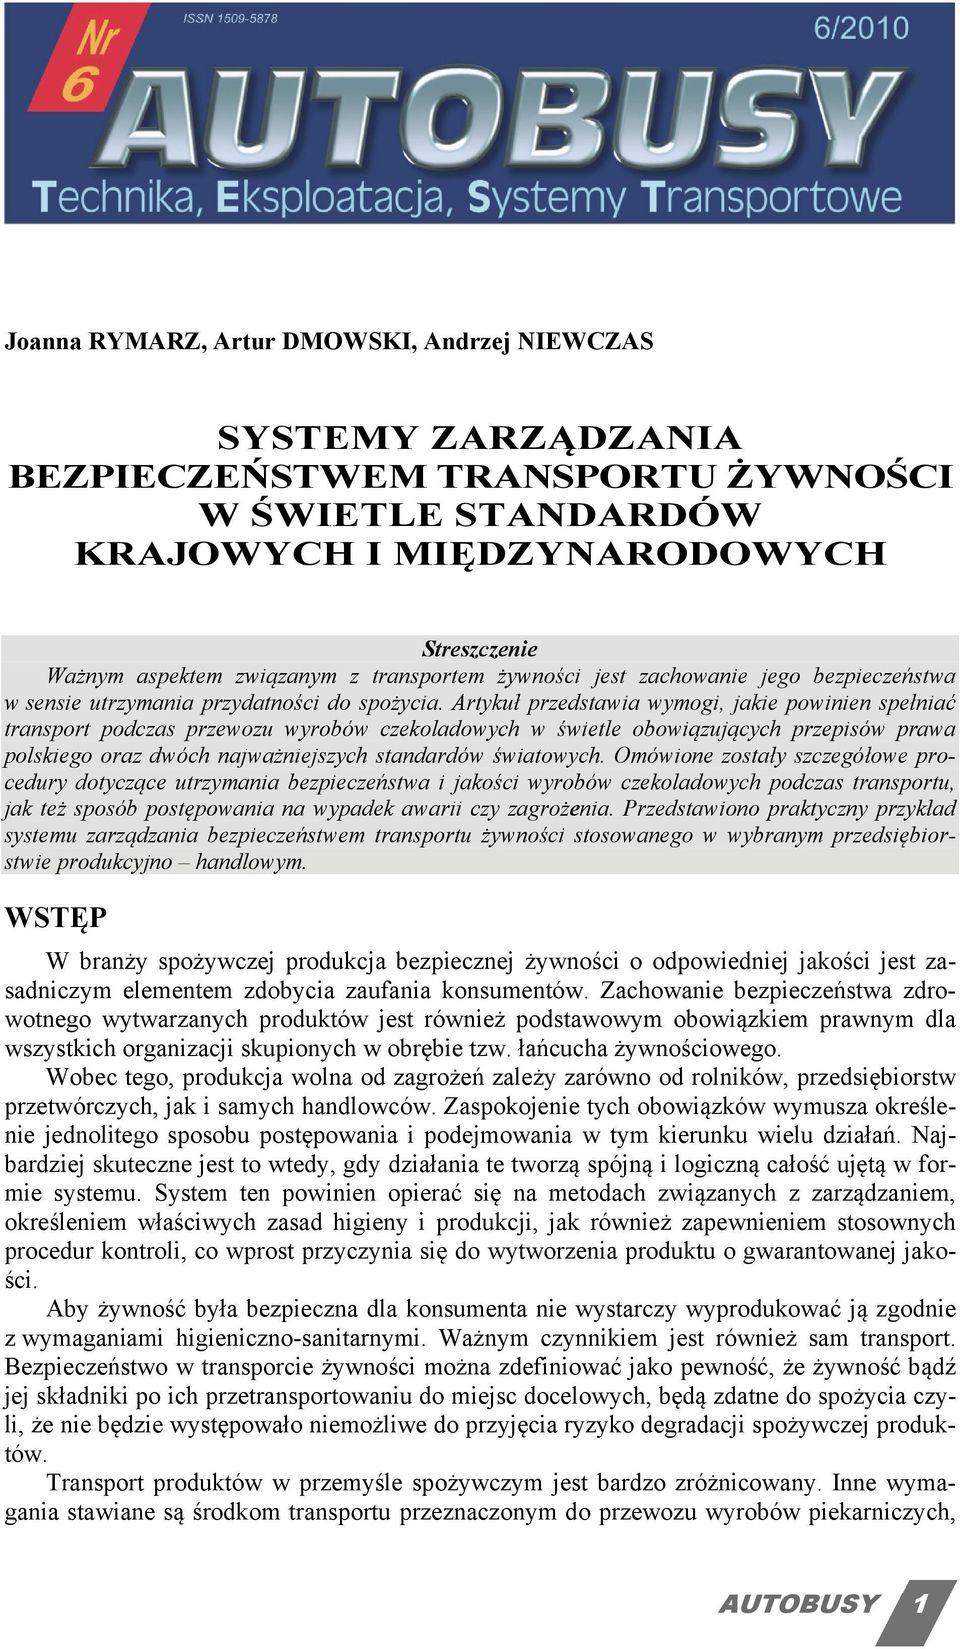 Artykuł przedstawia wymogi, jakie powinien spełniać transport podczas przewozu wyrobów czekoladowych w świetle obowiązujących przepisów prawa polskiego oraz dwóch najważniejszych standardów